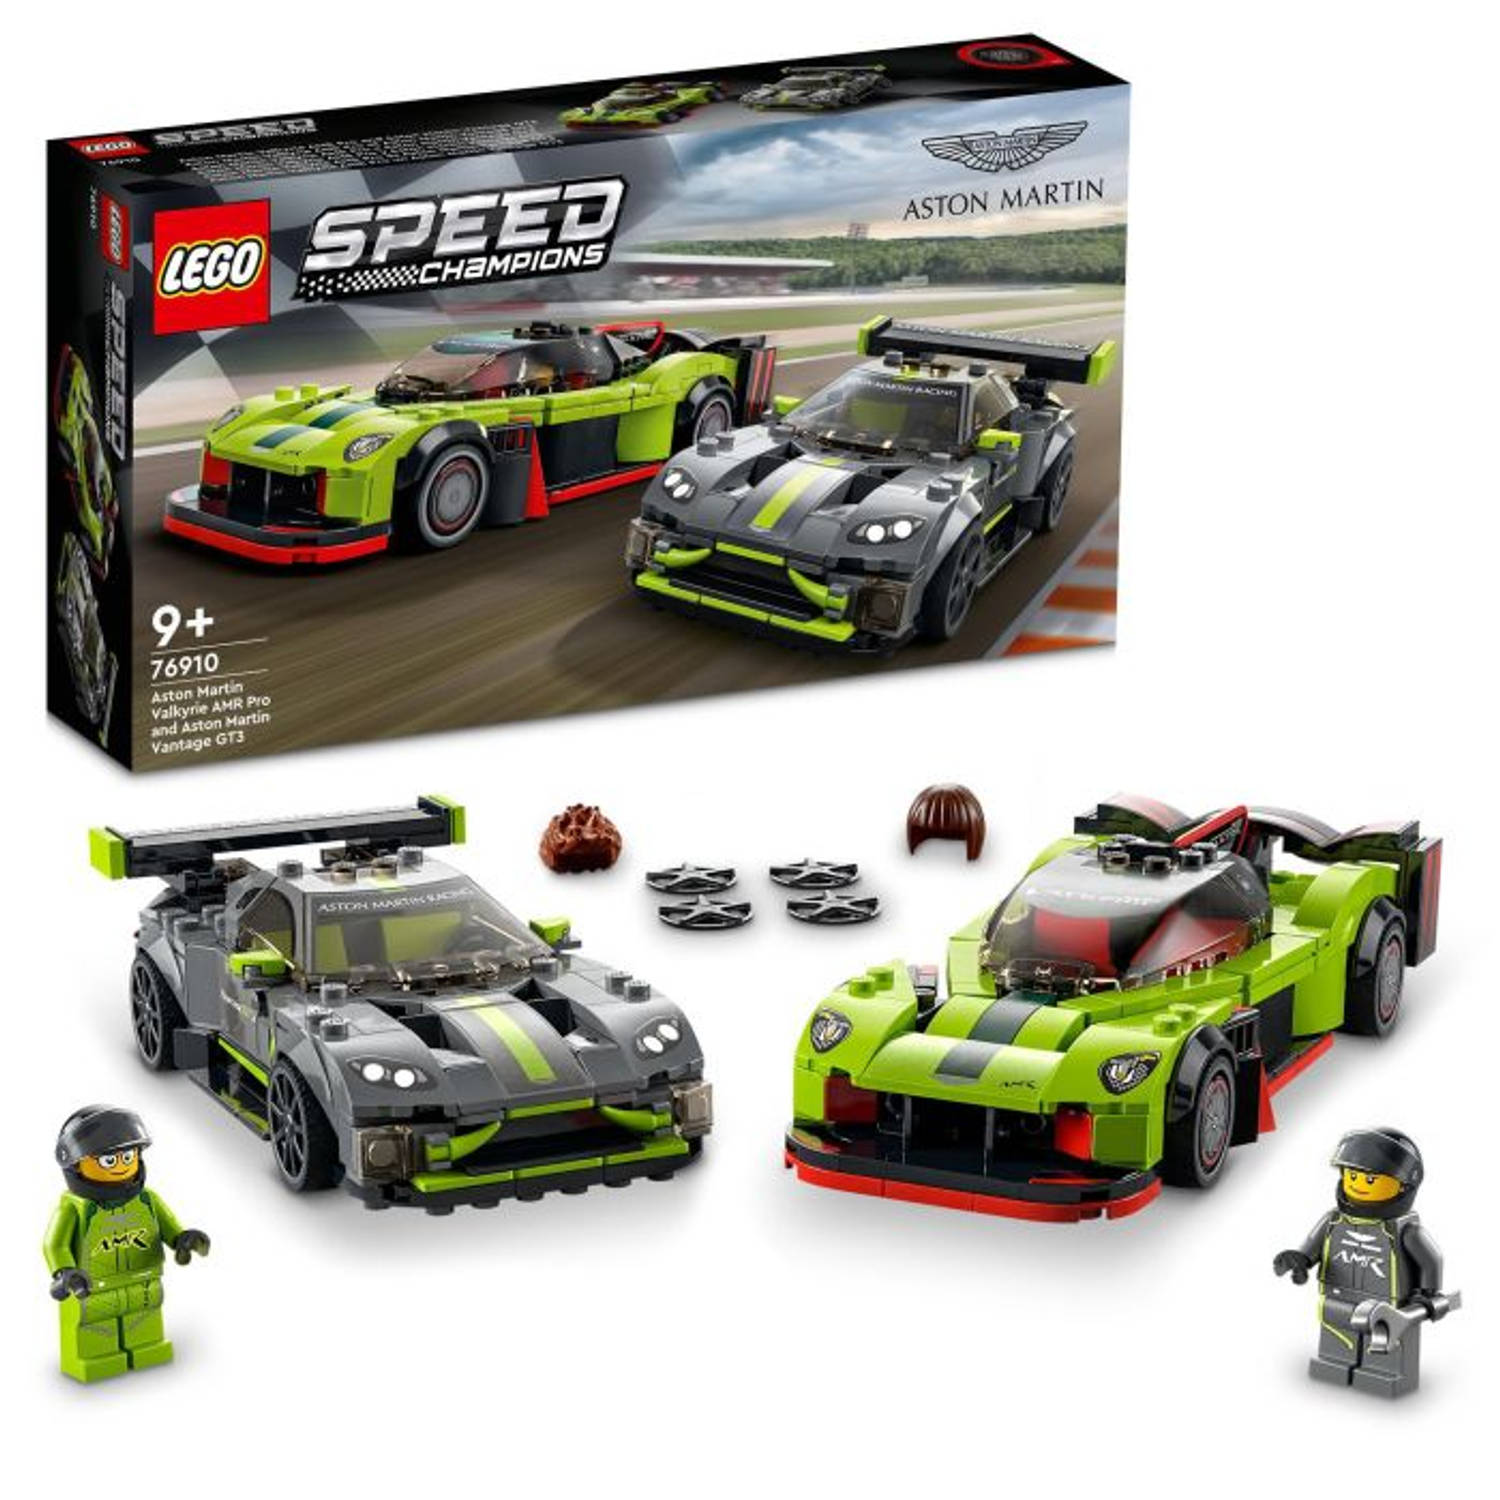 LEGO® SPEED CHAMPIONS 76910 Aston Martin Valkyrie AMR Pro & Aston Martin Vantage GT3